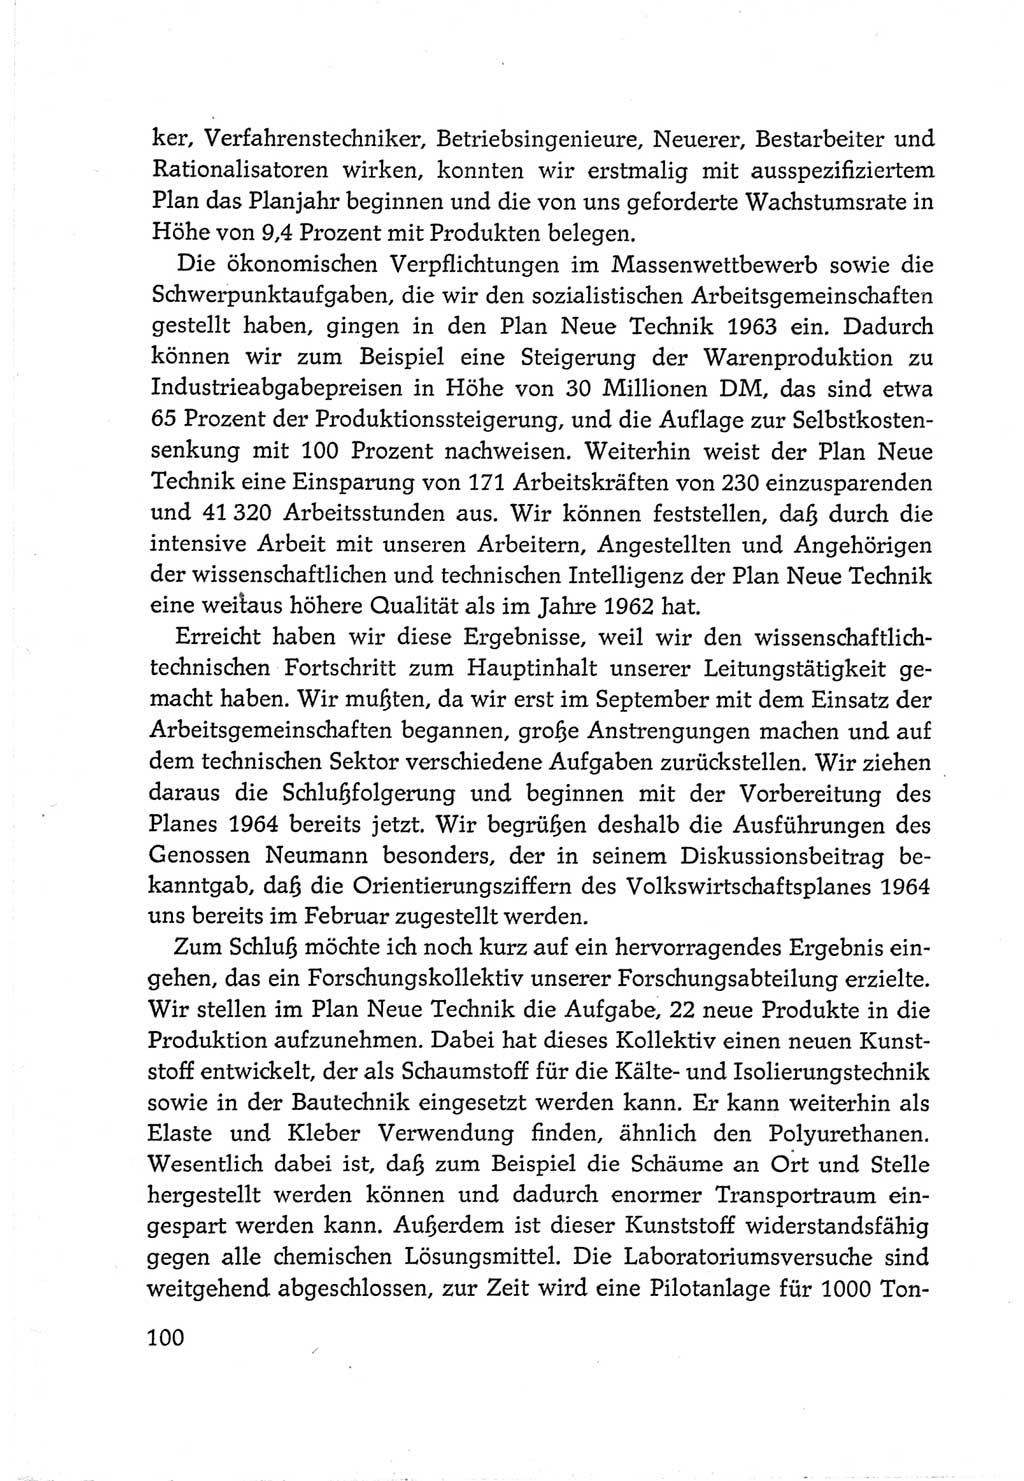 Protokoll der Verhandlungen des Ⅵ. Parteitages der Sozialistischen Einheitspartei Deutschlands (SED) [Deutsche Demokratische Republik (DDR)] 1963, Band Ⅲ, Seite 100 (Prot. Verh. Ⅵ. PT SED DDR 1963, Bd. Ⅲ, S. 100)